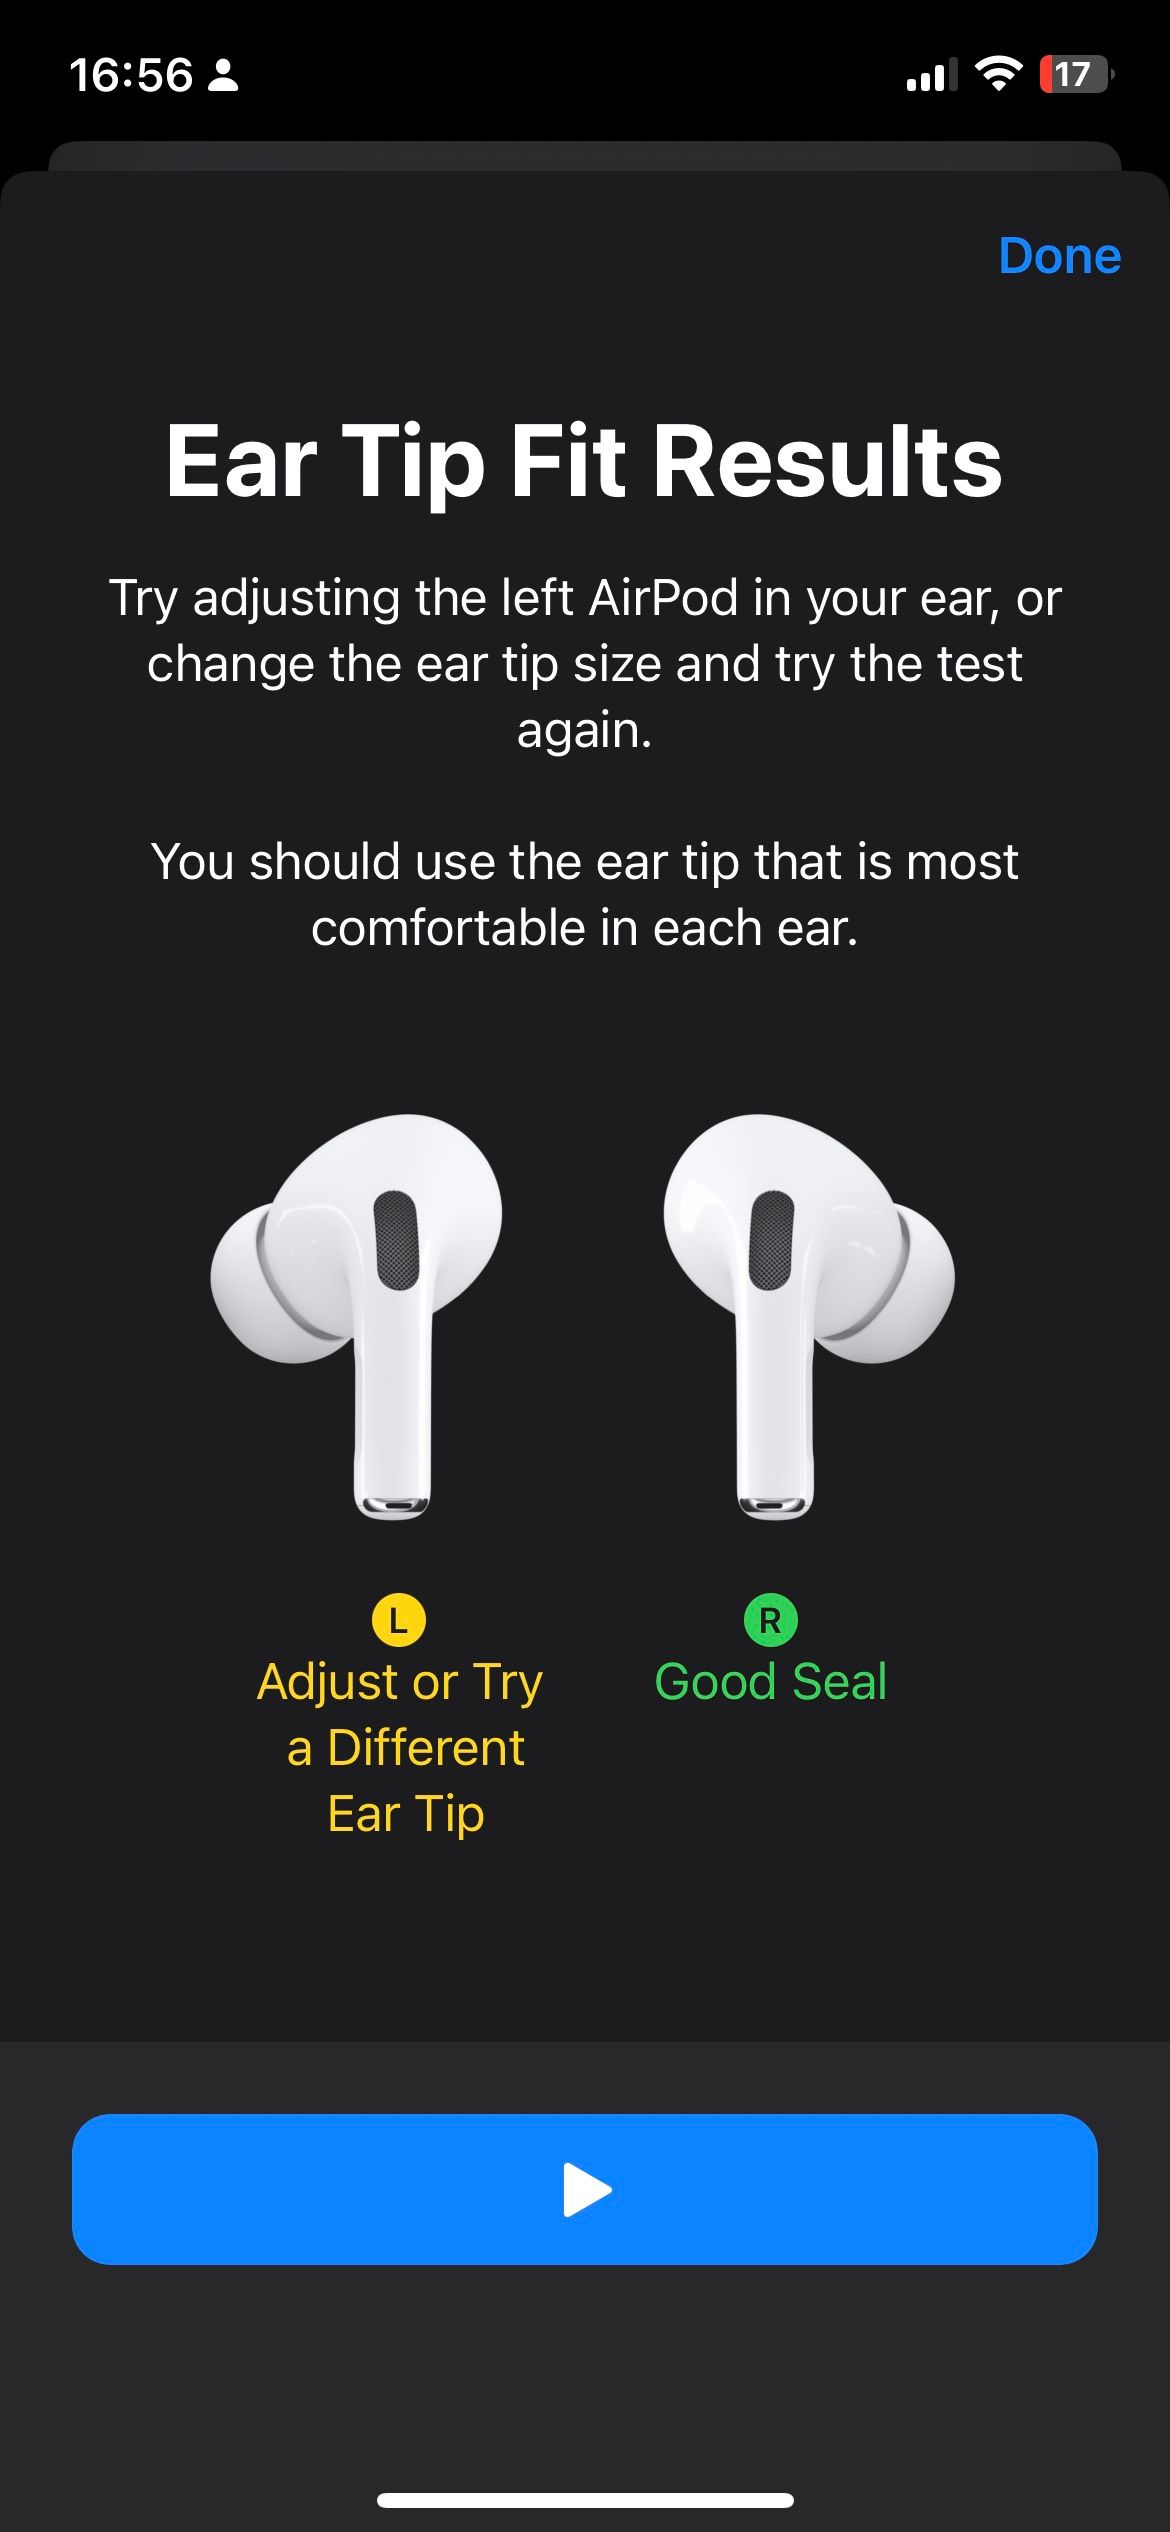 نتایج تست AirPods Pro Ear Tip Fit اندازه گوش اشتباه است